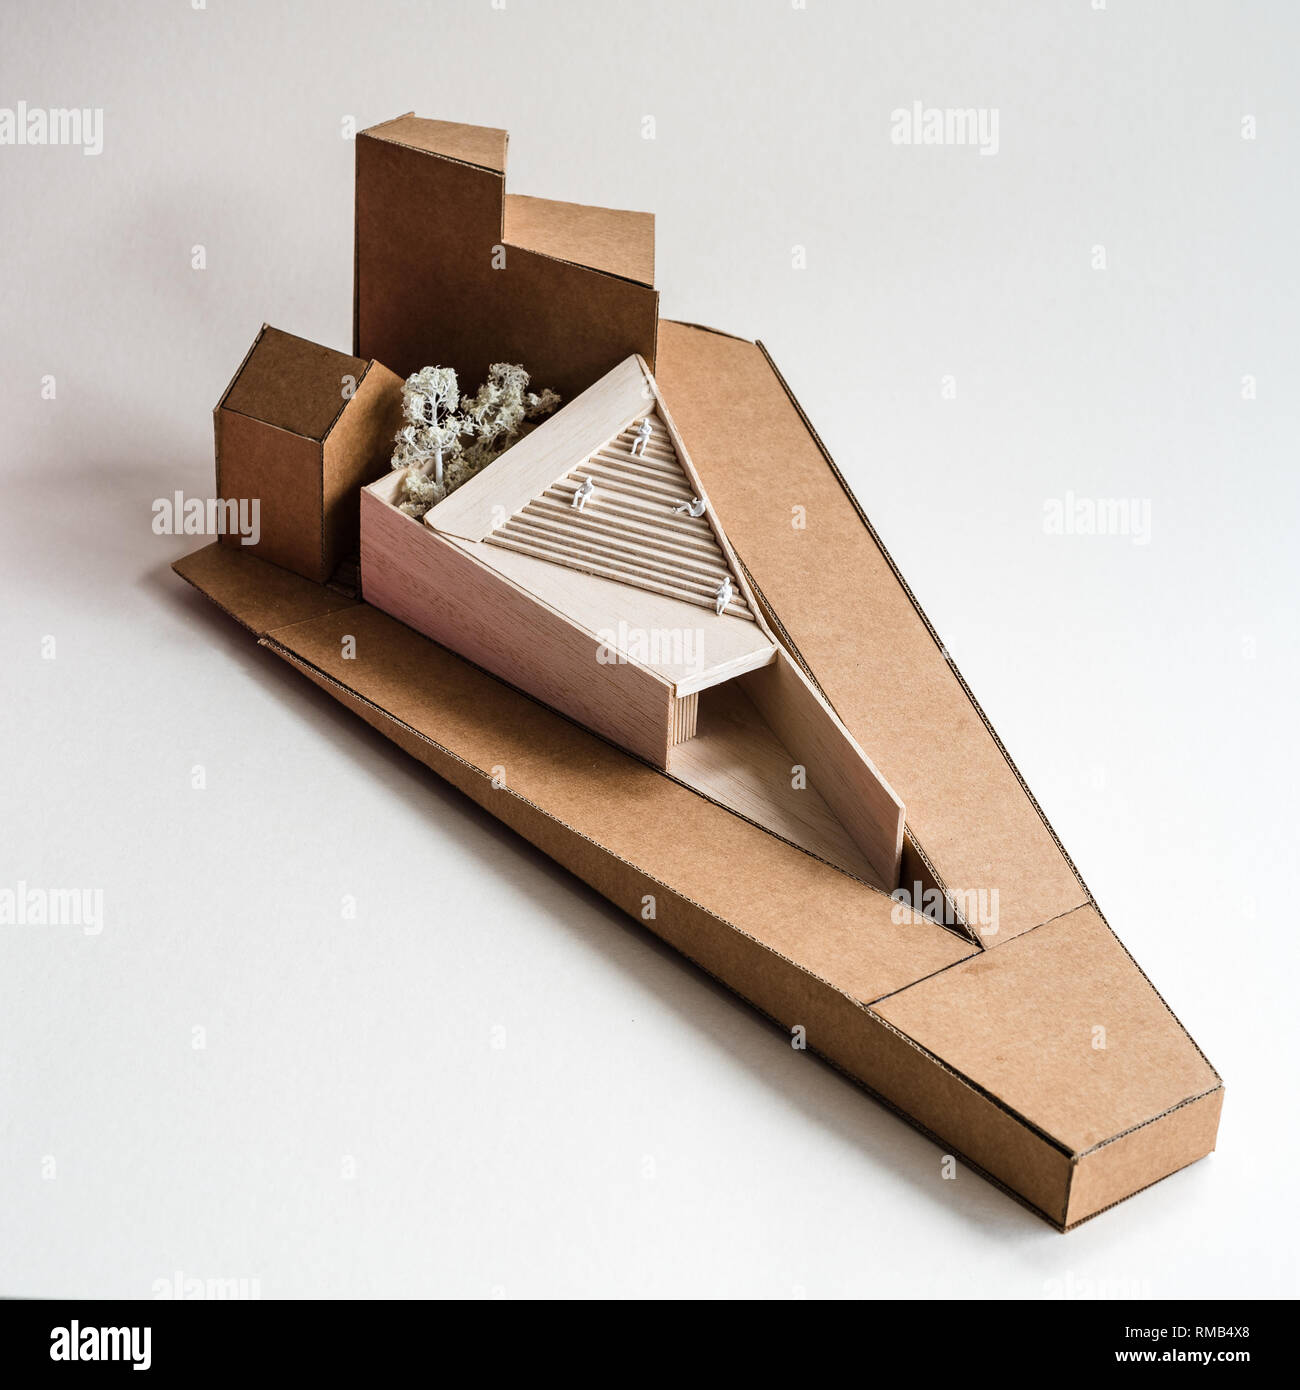 Moderne Architektur Modell mit Holz und Karton auf weißem Hintergrund  Stockfotografie - Alamy